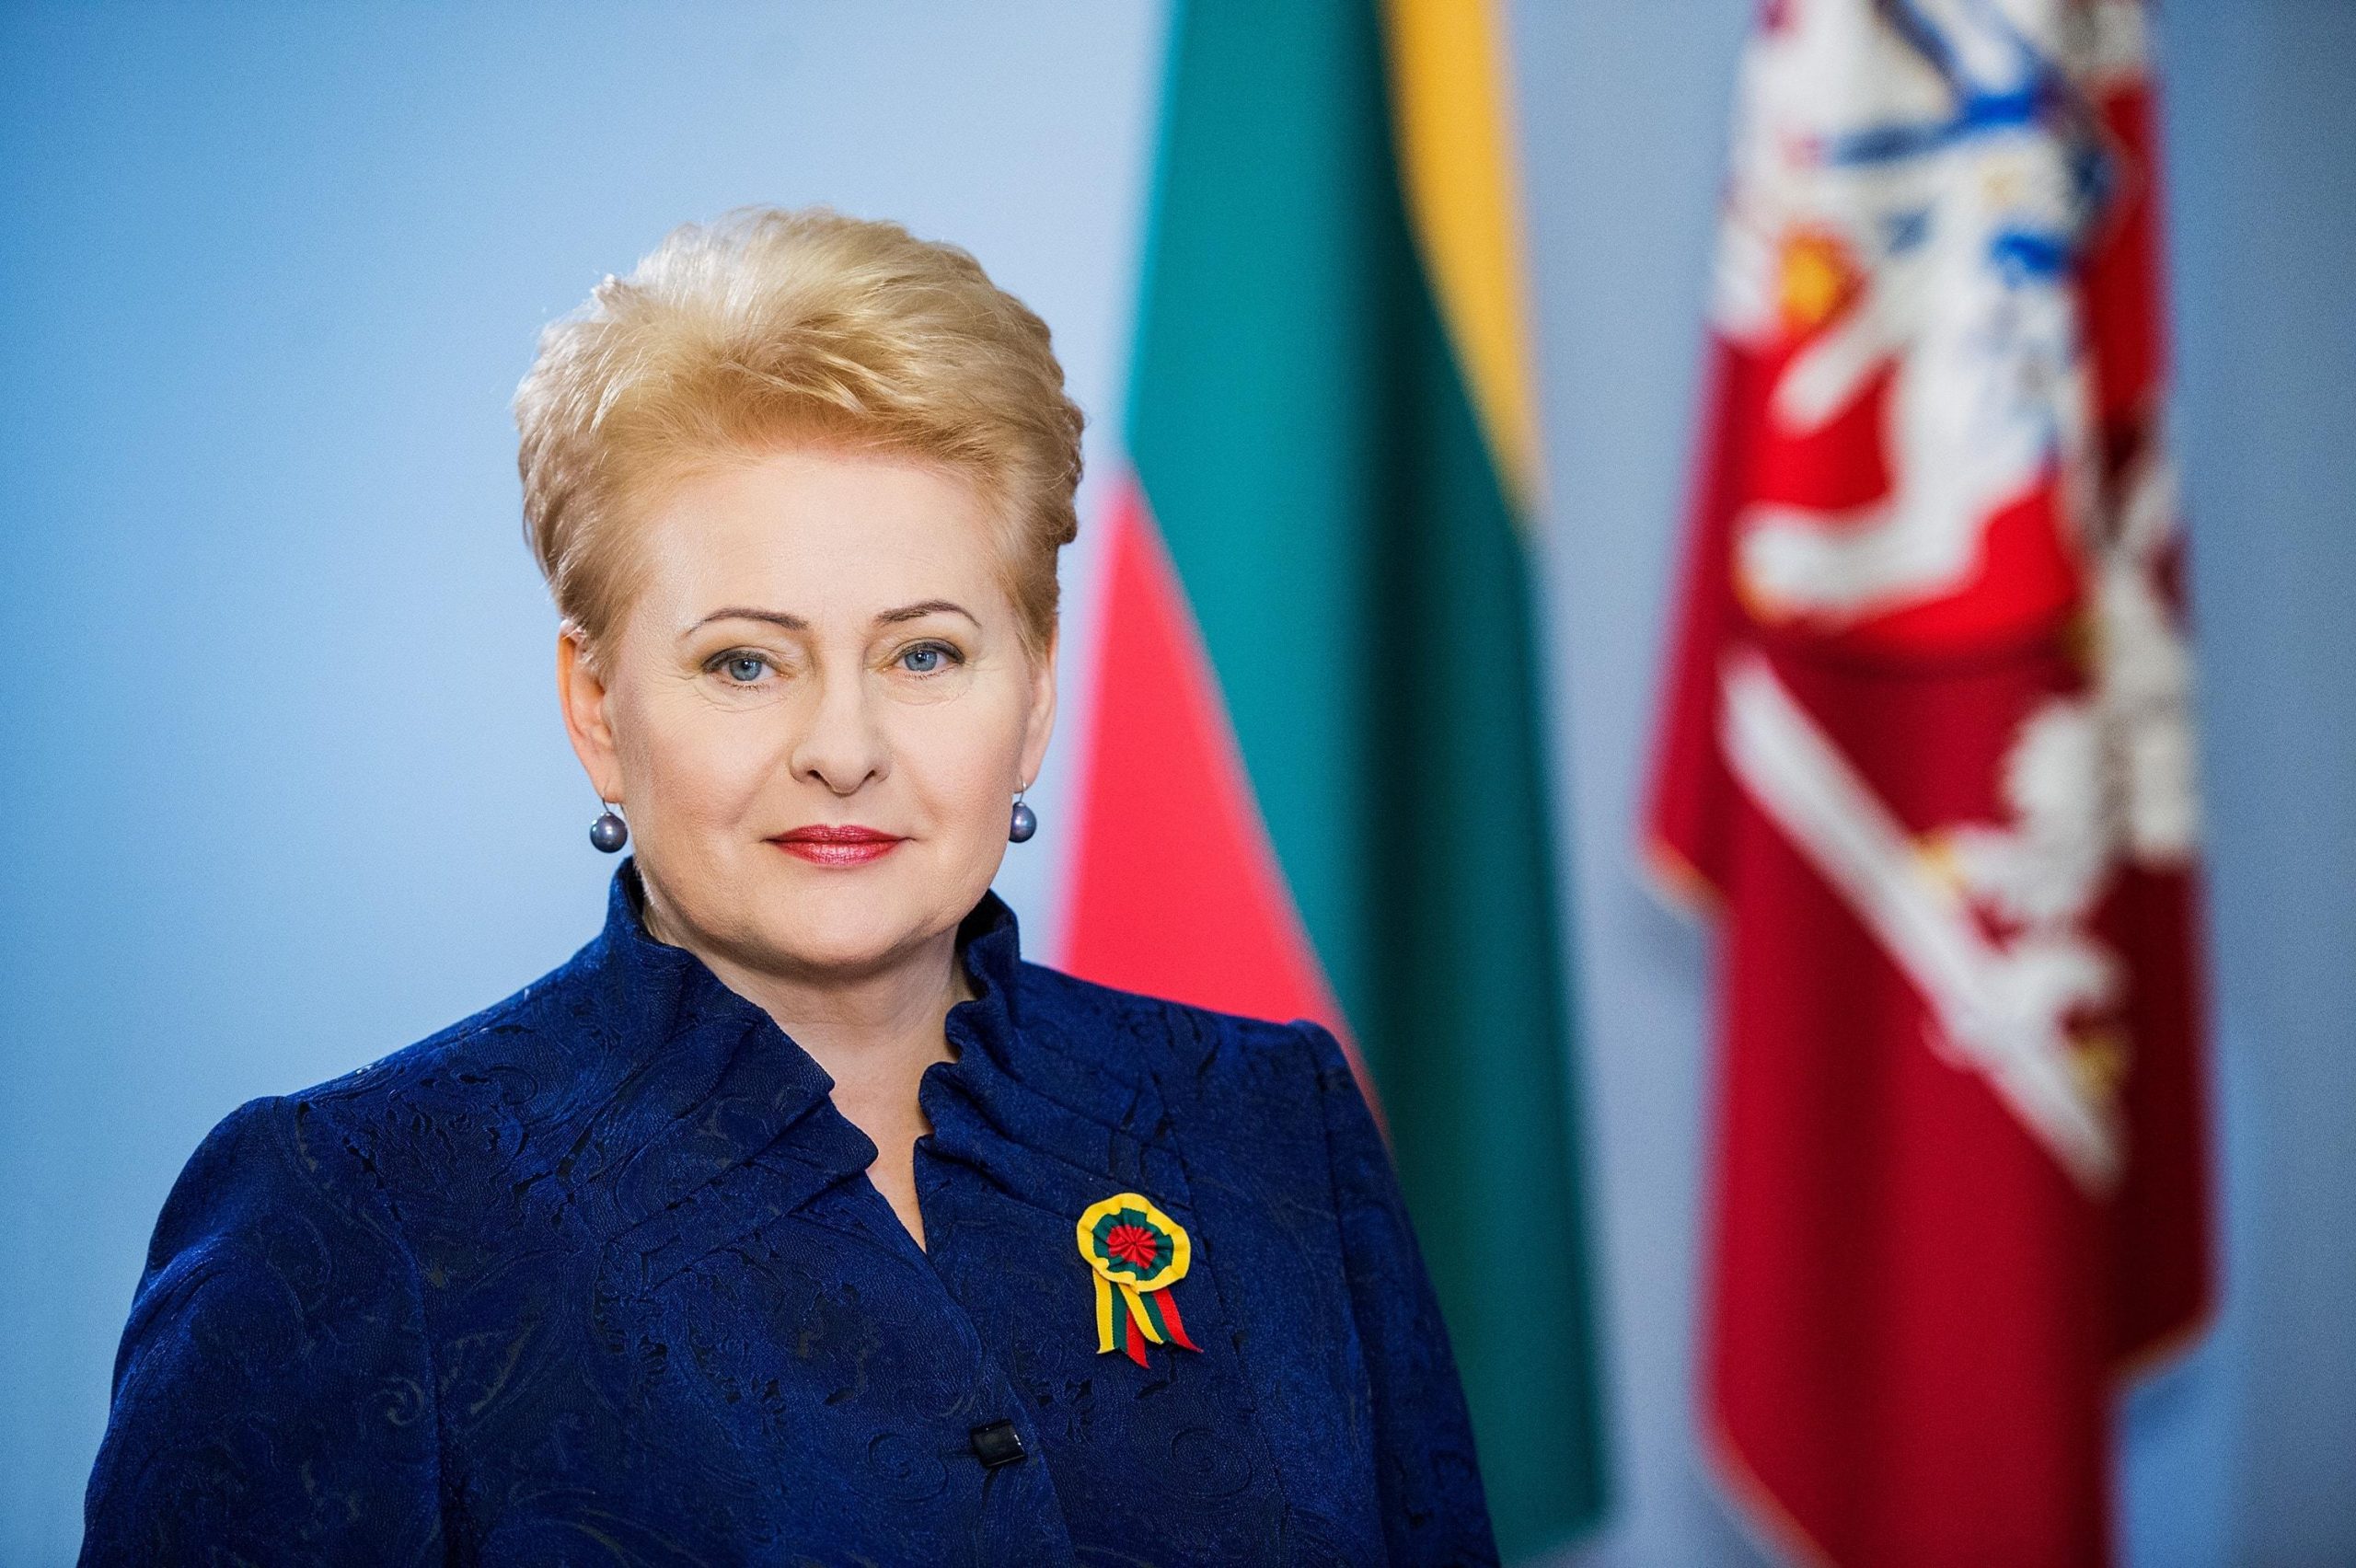 Dalios Grybauskaitės sveikinimas Vasario 16-osios proga / Dalia Grybauskaitė